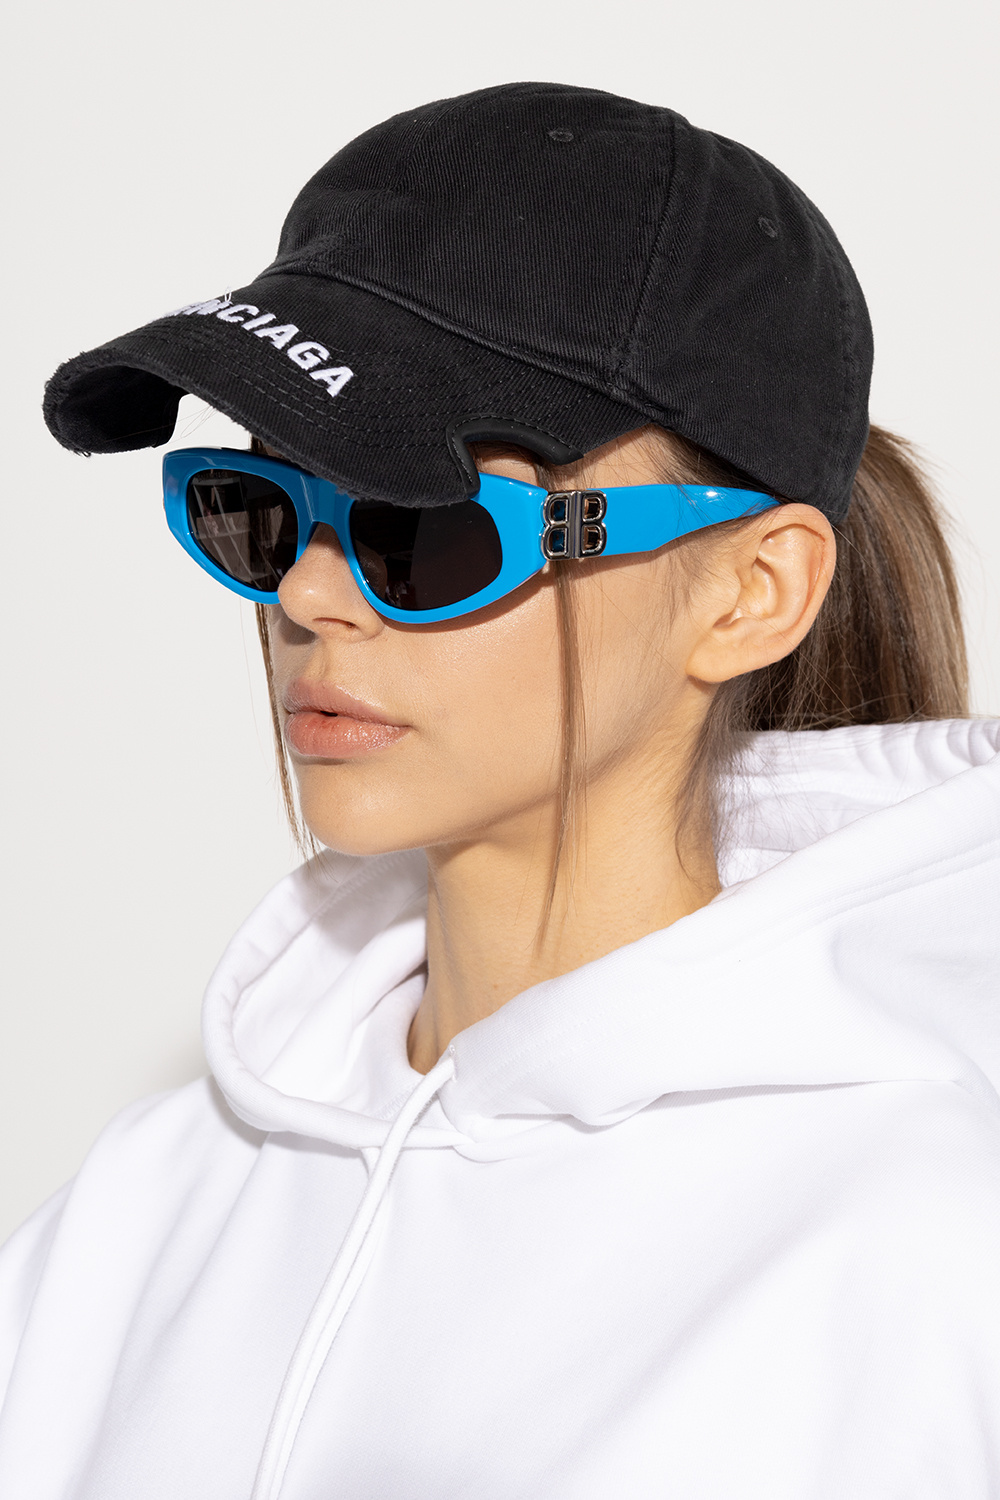 Balenciaga ‘Dynasty D-Frame’ MISSB1U sunglasses